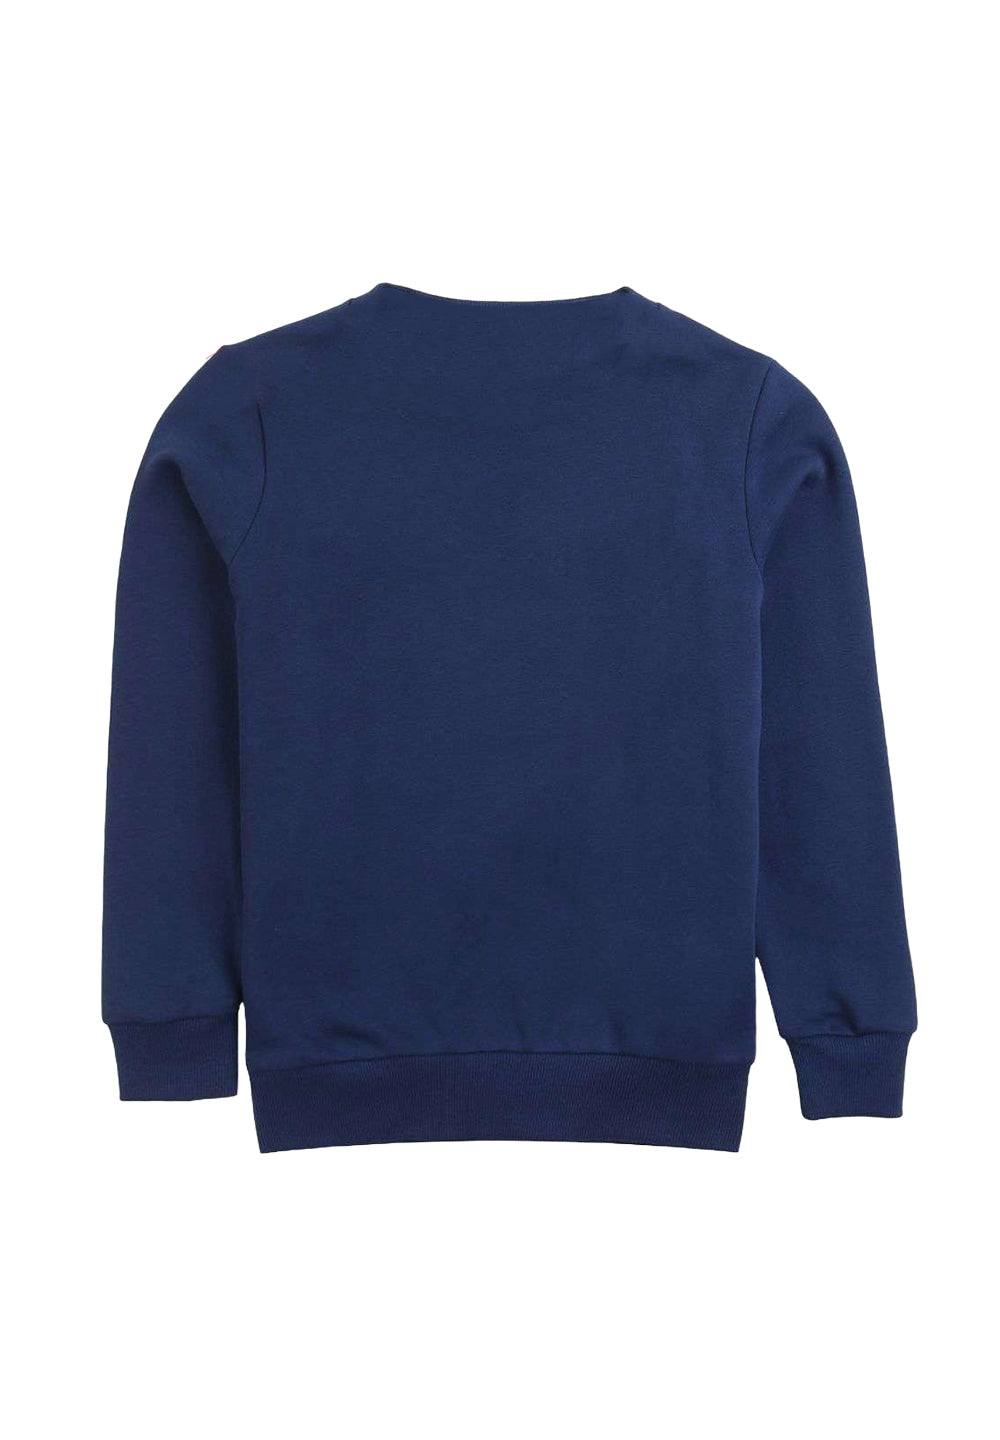 Blue crewneck sweatshirt for boy